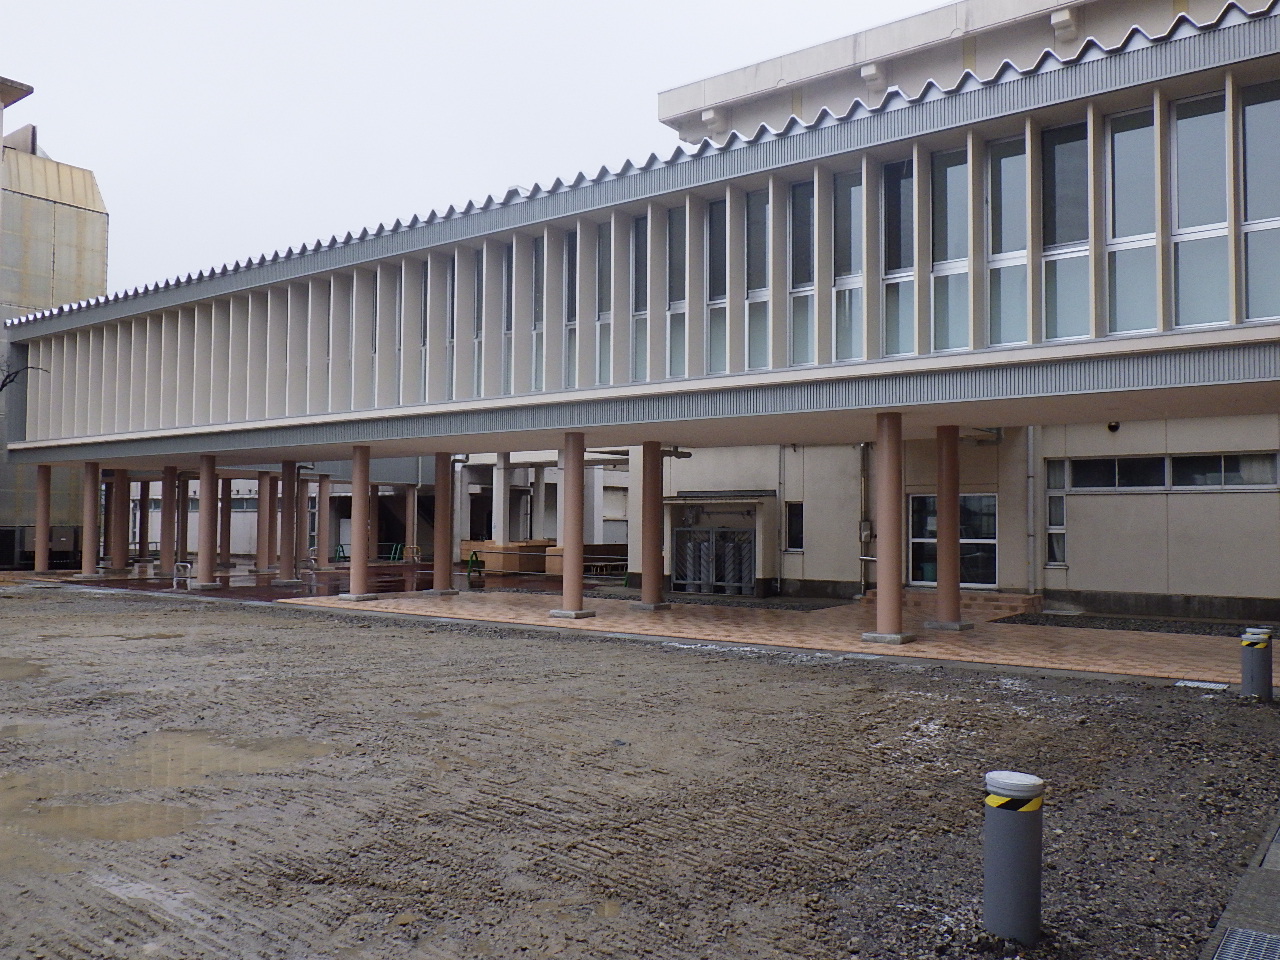 2015年 県立魚津工業高校渡り廊下新築工事